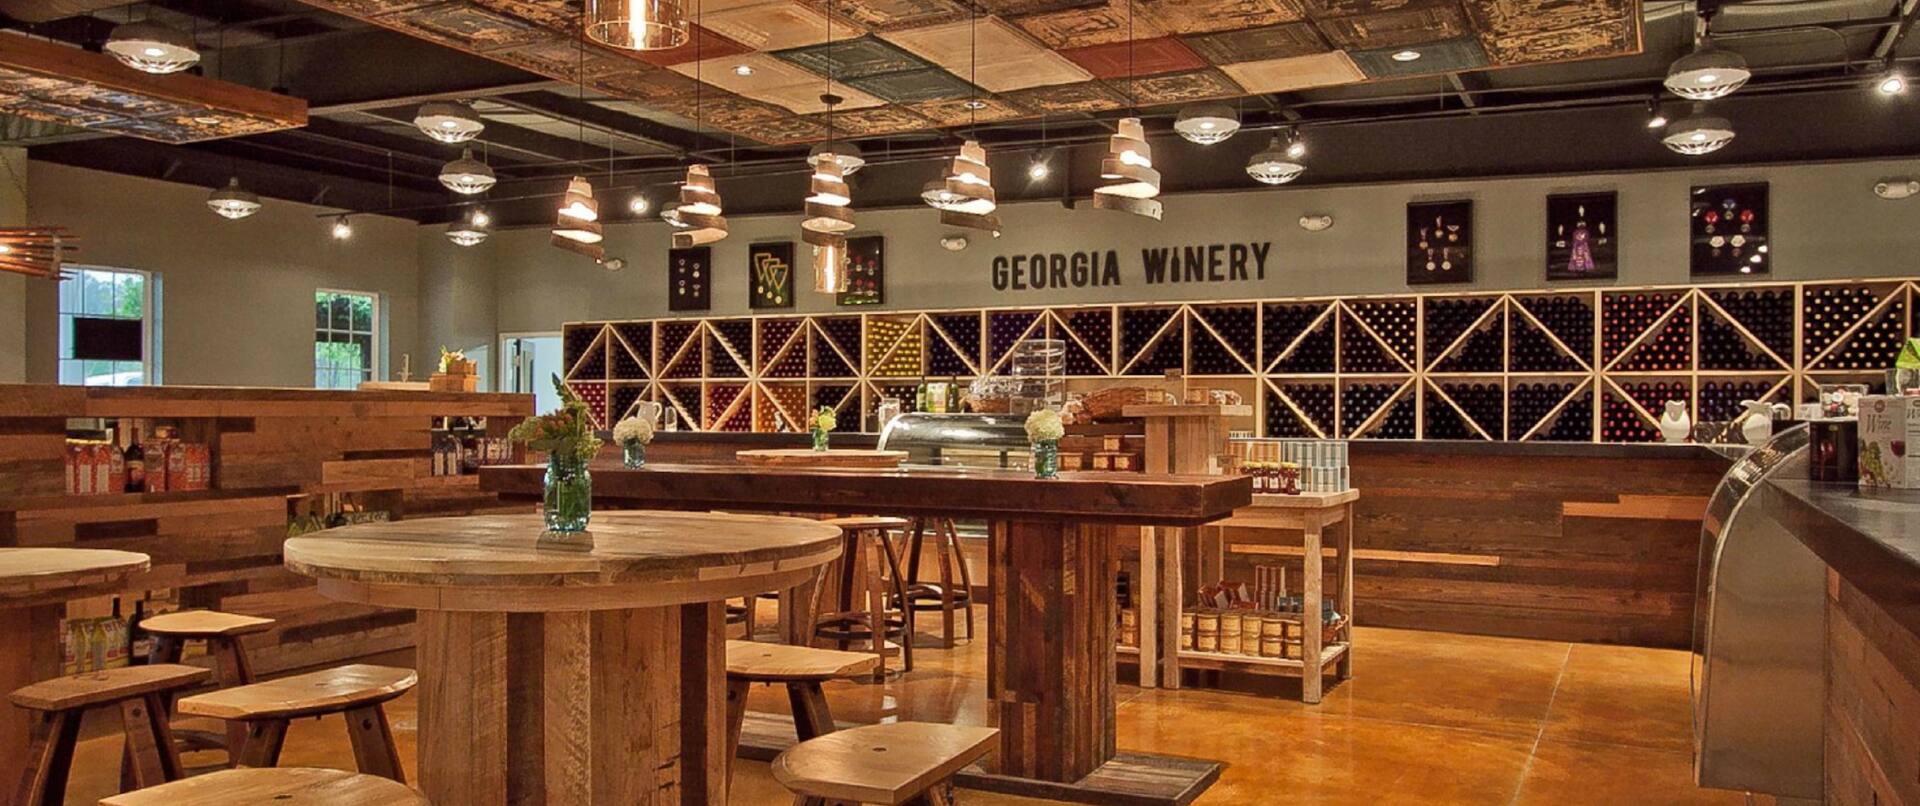 Georgia Winery